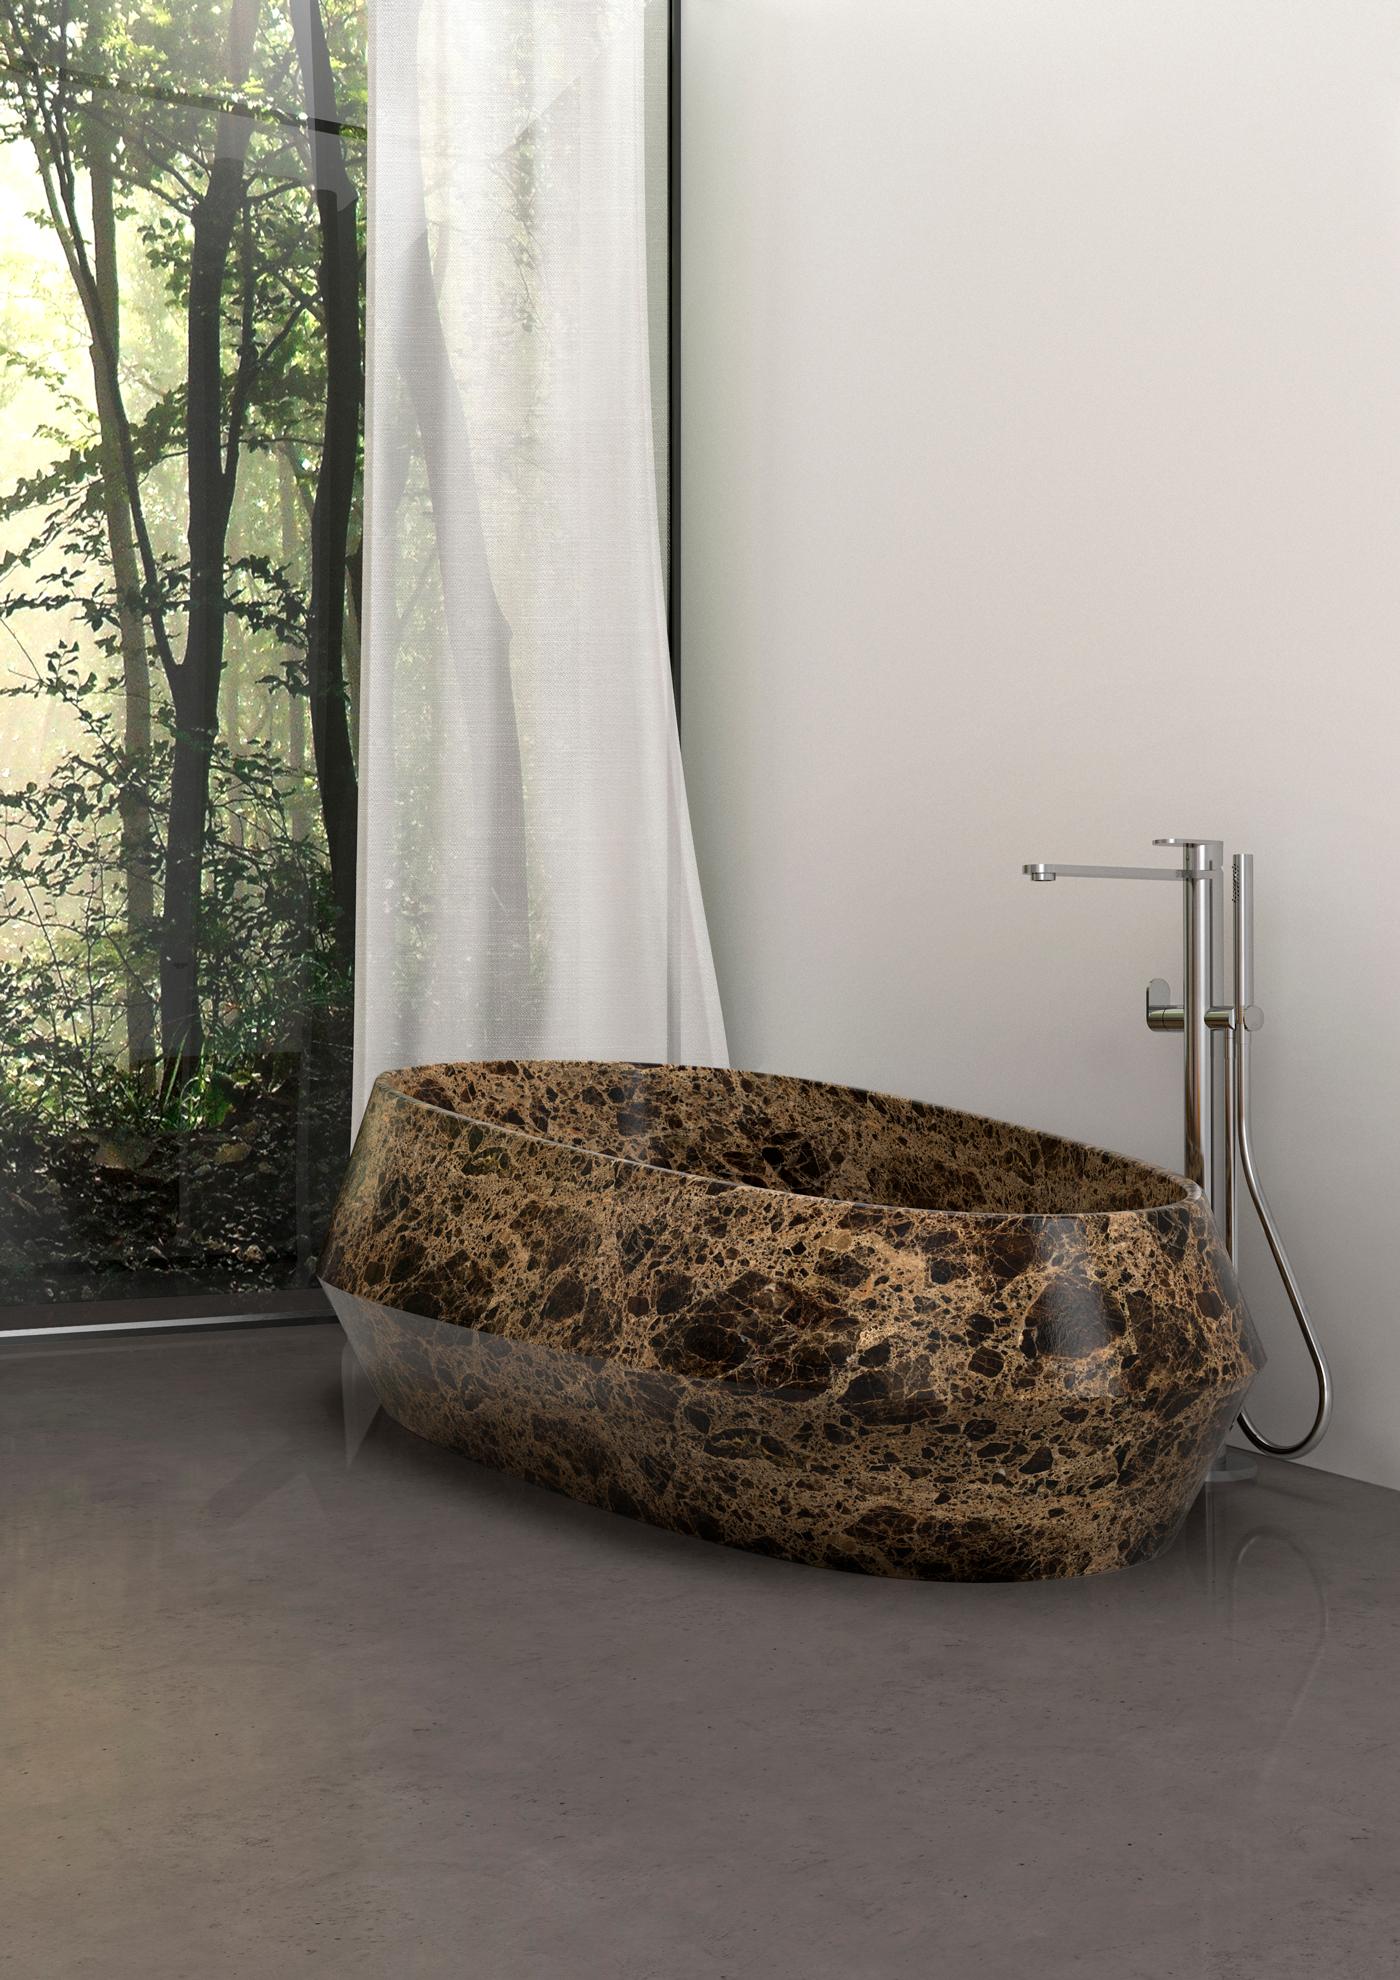 Contemporary Rosso Francia Tosca Bath by Marmi Serafini For Sale